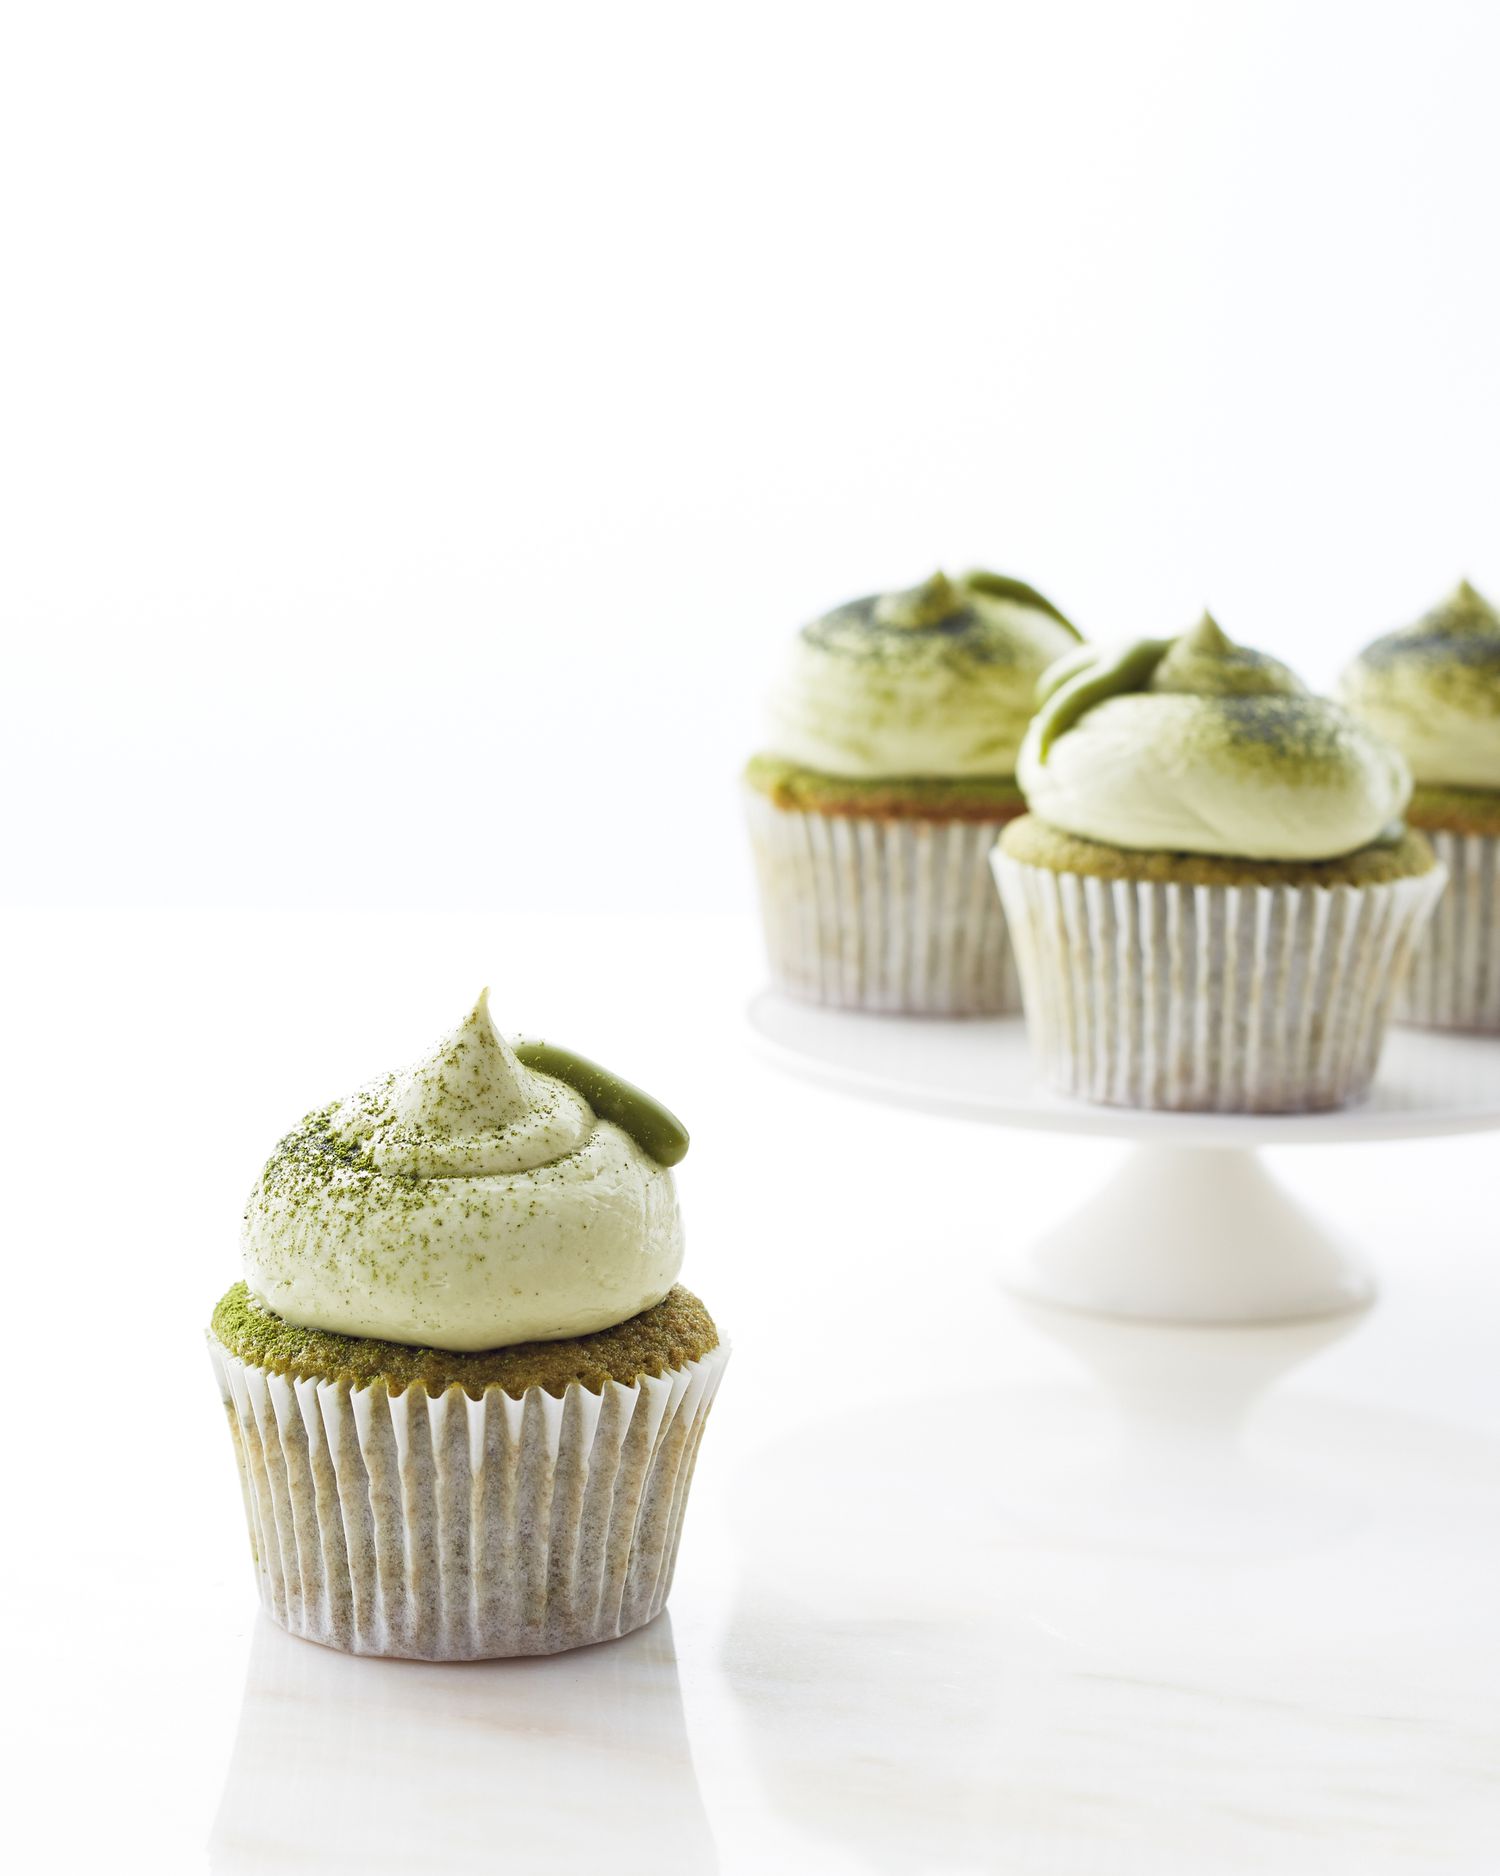 Green Tea Cupcakes